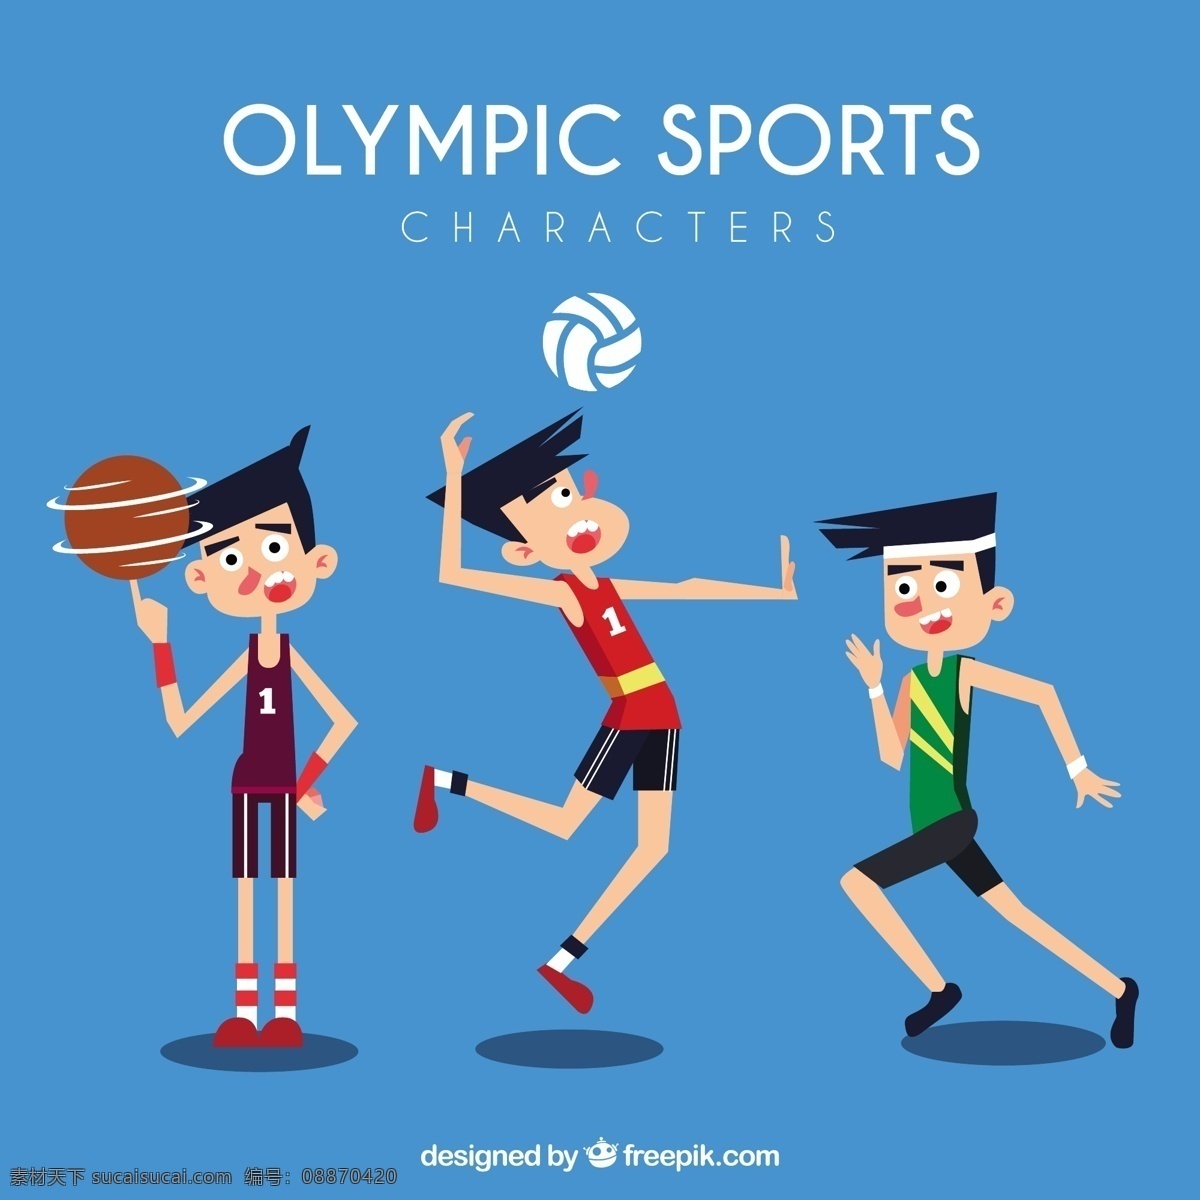 奥林匹克运动 中 人物 夏季 体育 健身 健康 篮球 人 活动 2016 运动 跑步 训练 运动会 巴西 人体 比赛 生活方式